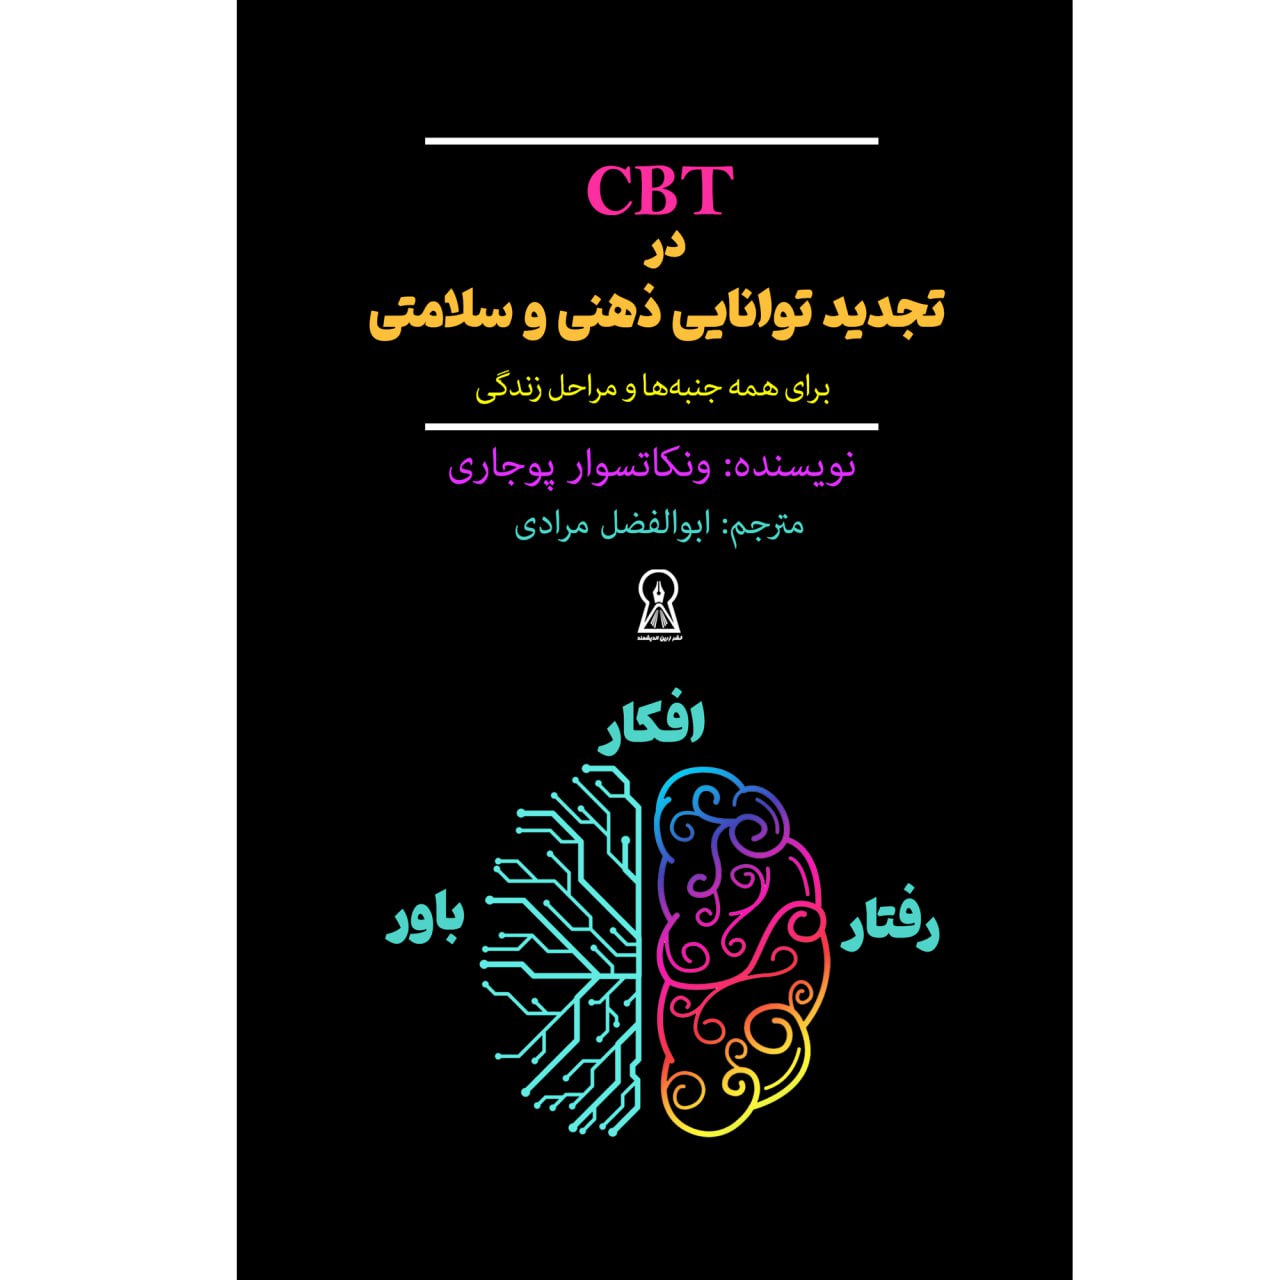  کتاب CBT در تجدید توانایی ذهنی و سلامتی اثر ونکاتسوار پوجاری نشر زرین اندیشمند